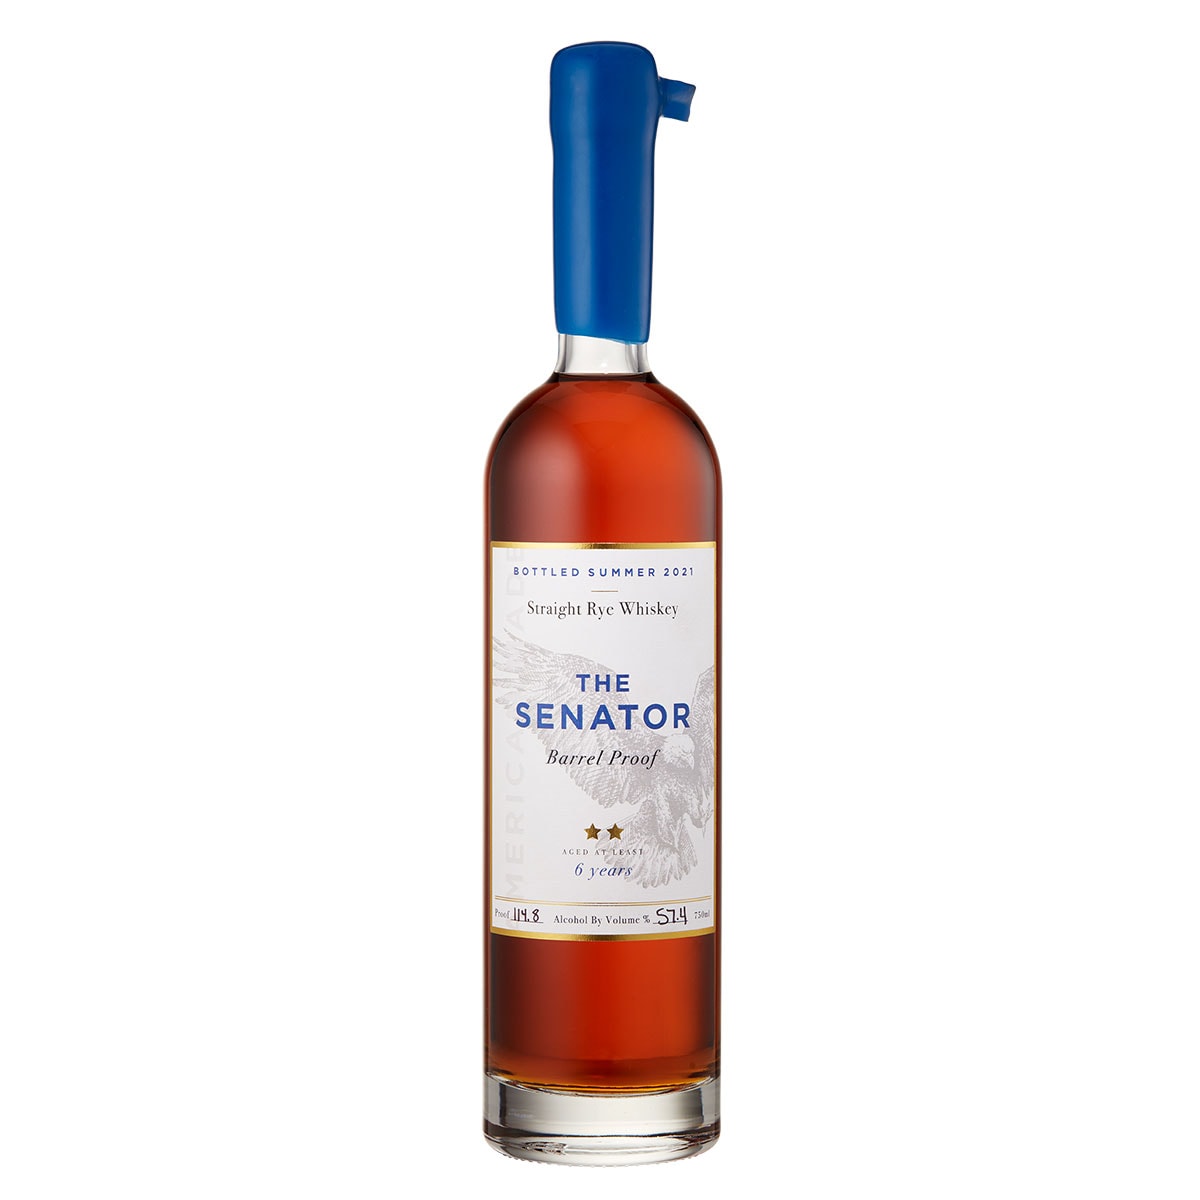 The Senator rye whiskies